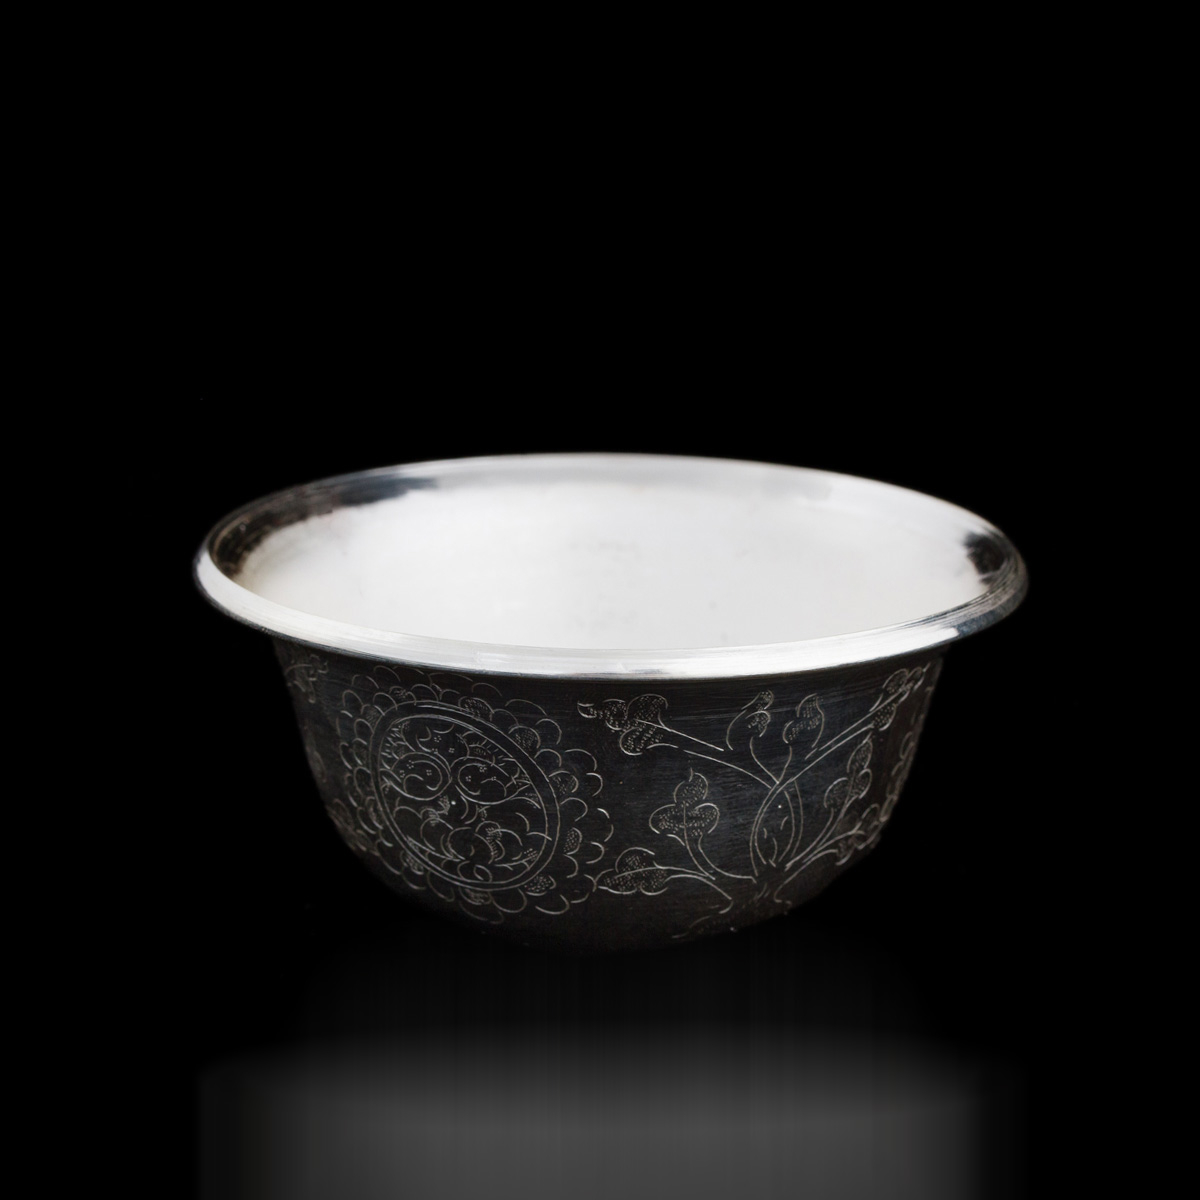 Чаши для подношений (набор из 7 шт.), 8 см, из серебра, Китай